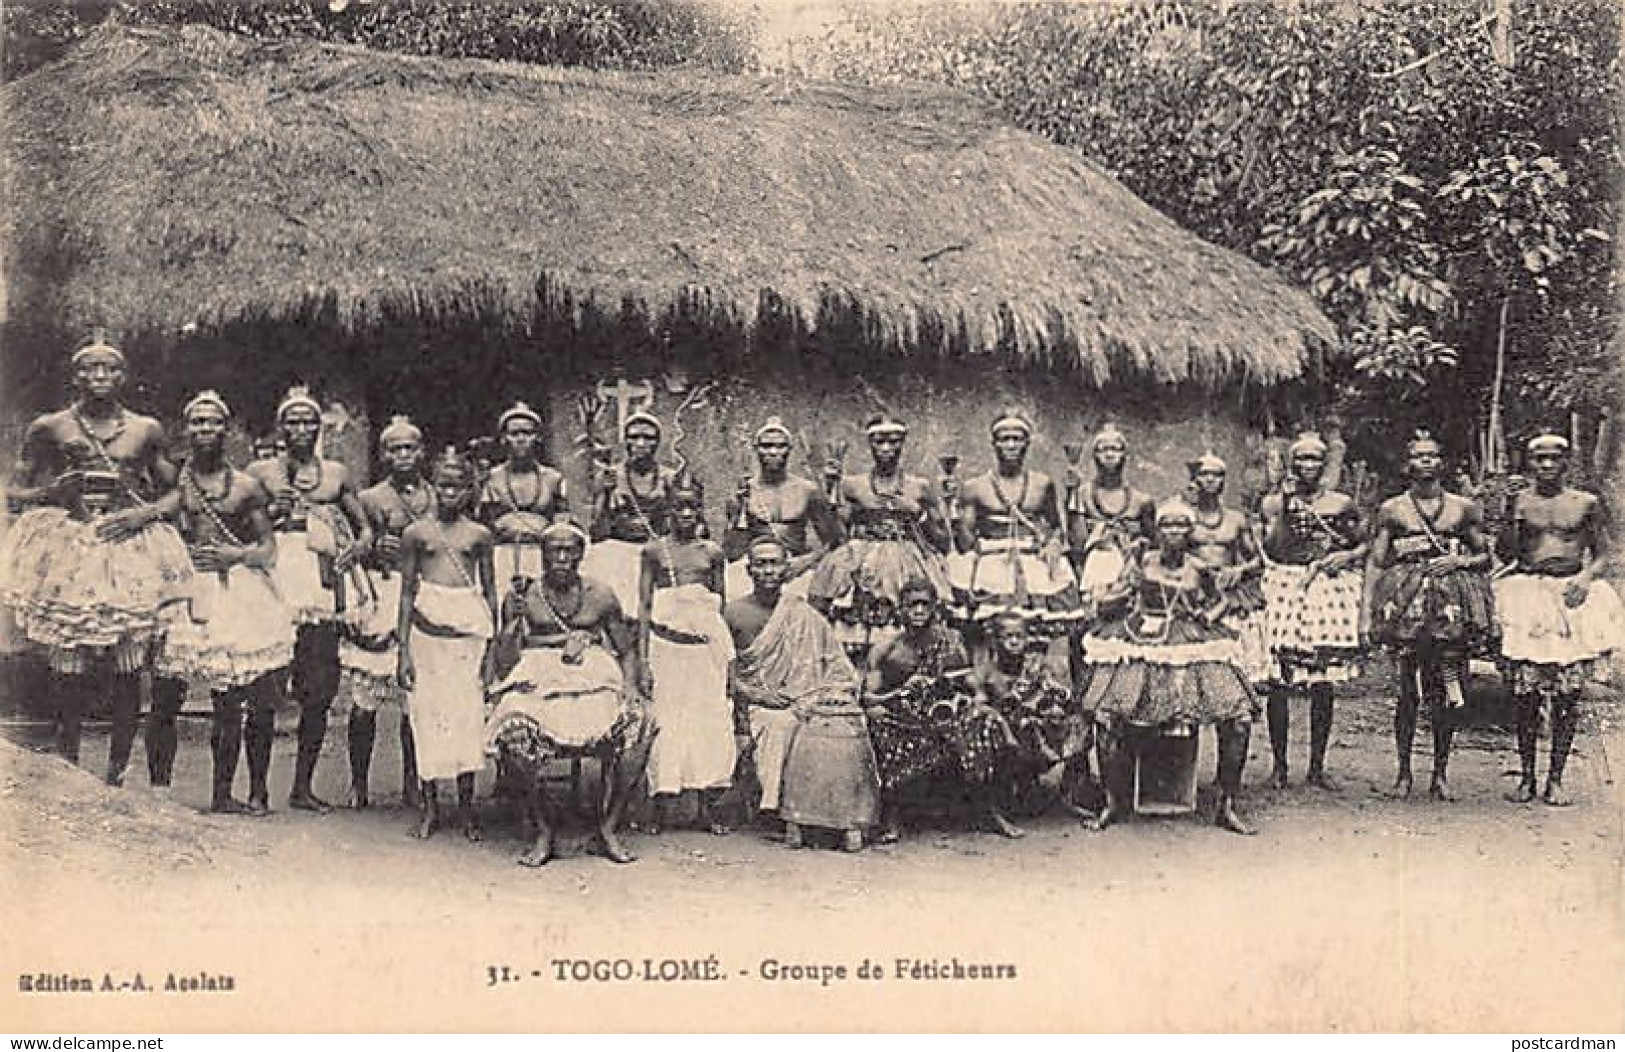 Togo - LOMÉ - Groupe De Féticheurs - Ed. A.-A. Acolatsé 31 - Togo